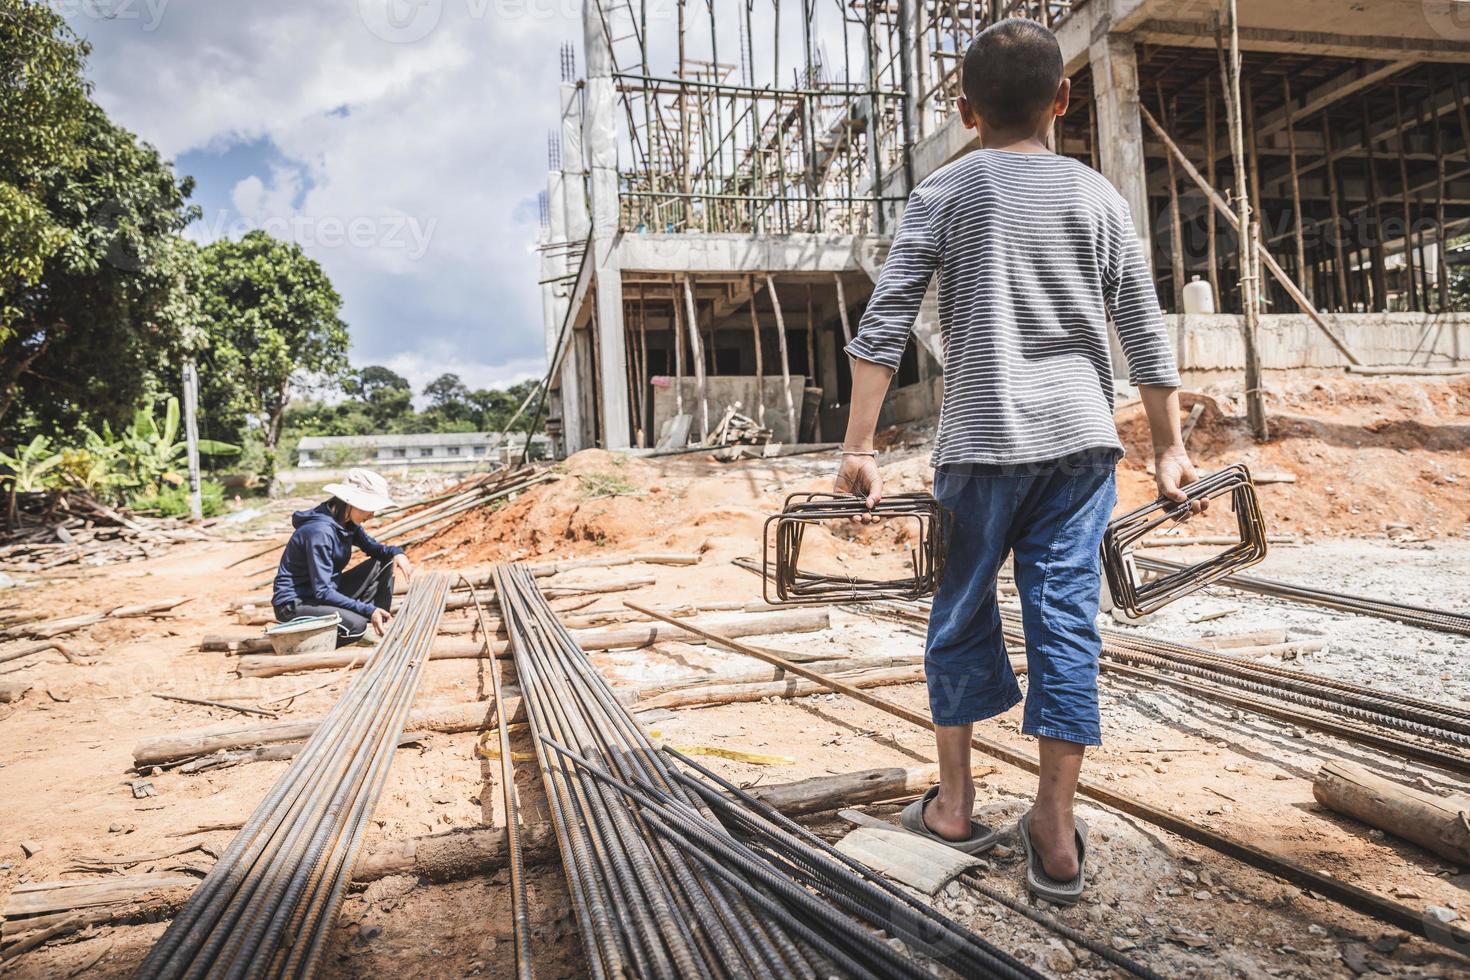 les enfants sont forcé à travail dans construction domaines. peur de enfant la main d'oeuvre et Humain trafic. Humain droits notions, Arrêtez enfant abus. photo